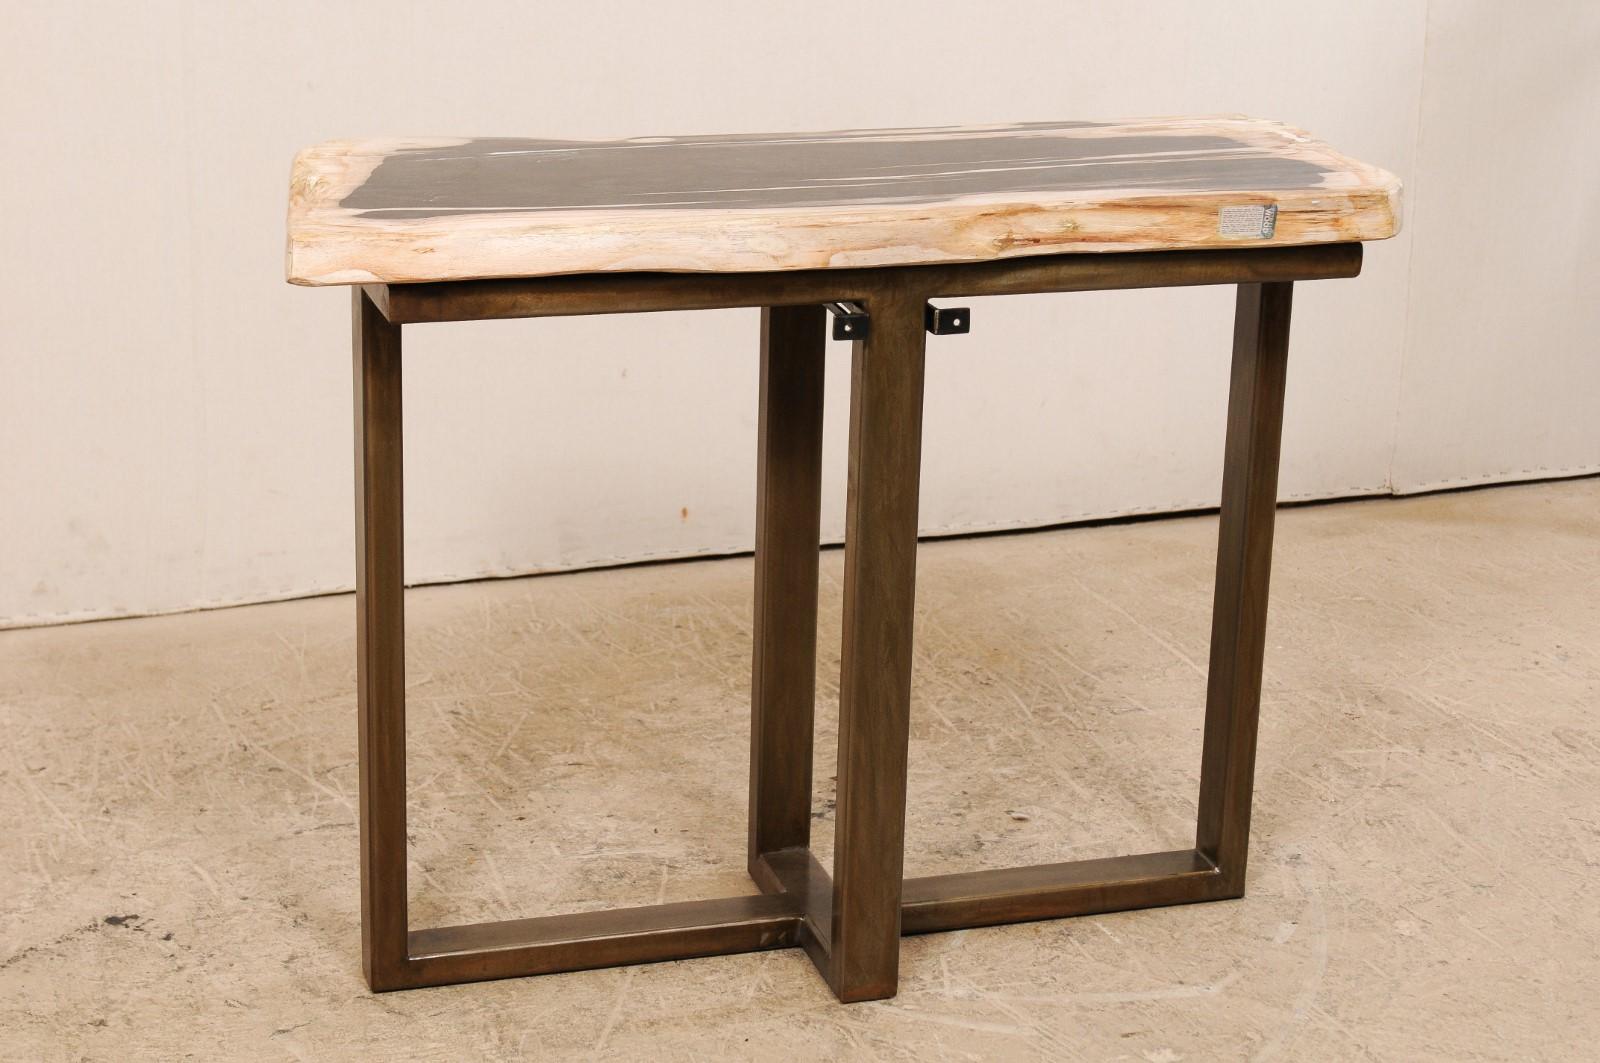 Une table console au design moderne avec un plateau en bois pétrifié. Cette table console personnalisée a été façonnée à partir d'une seule dalle épaisse de bois pétrifié poli et lisse, d'une longueur d'environ 1,5 mètre. Ce fabuleux plateau en bois